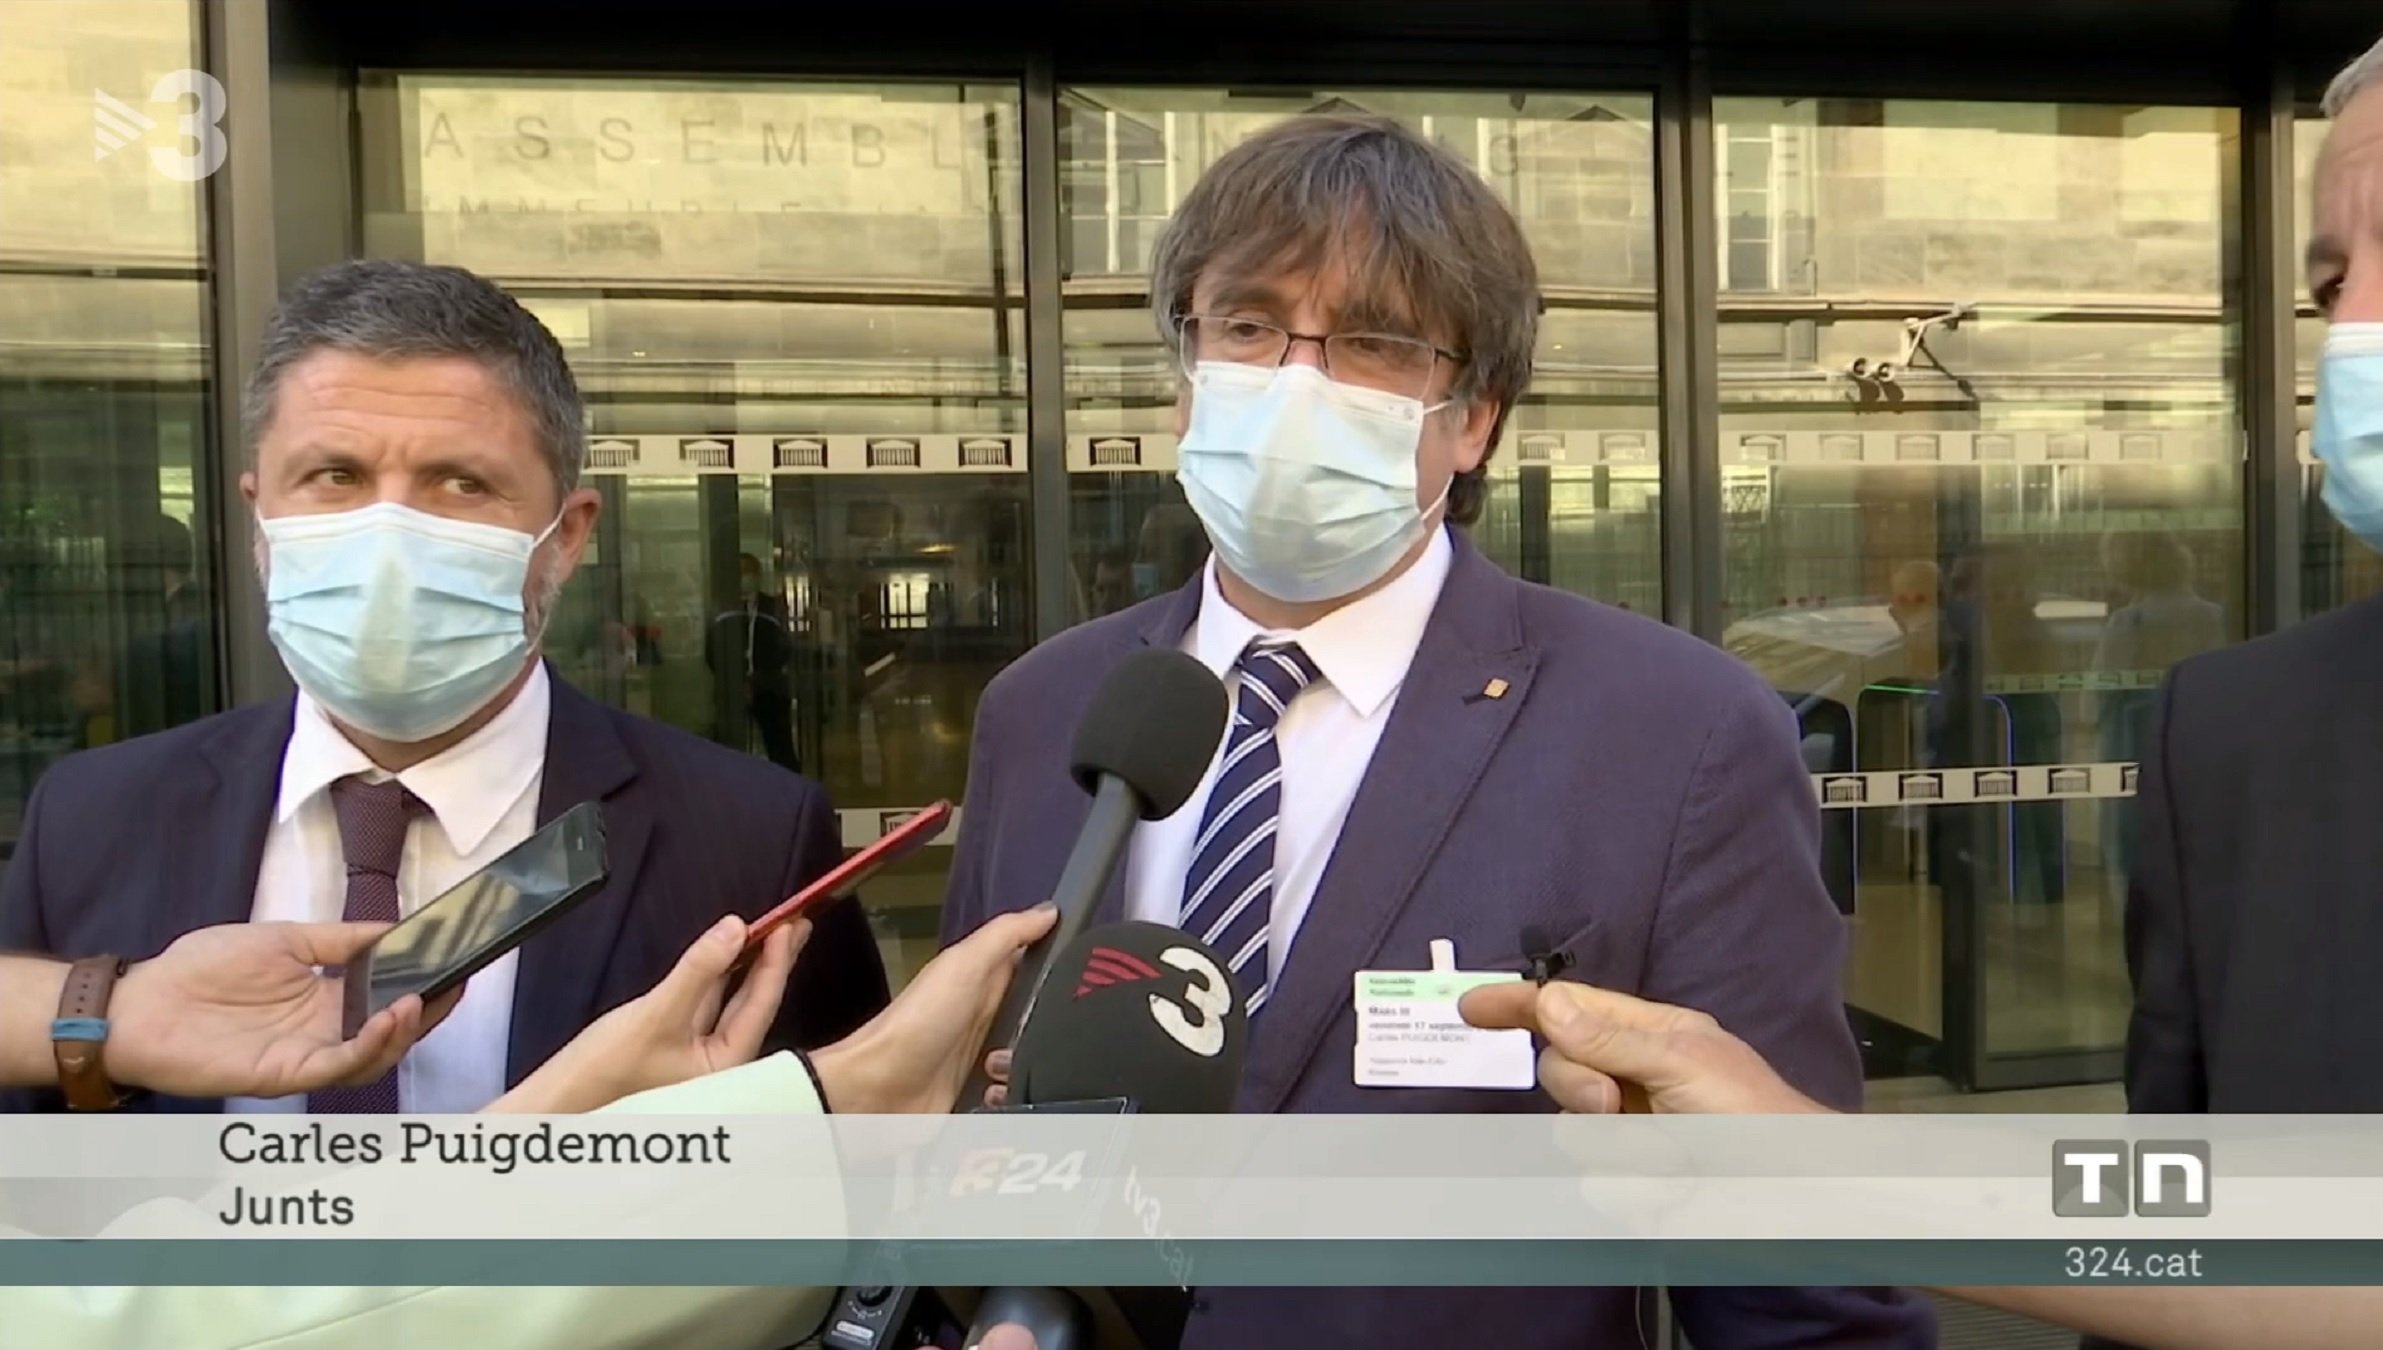 Críticas al letrero y al trato que recibe Carles Puigdemont en TV3: "vergüenza"